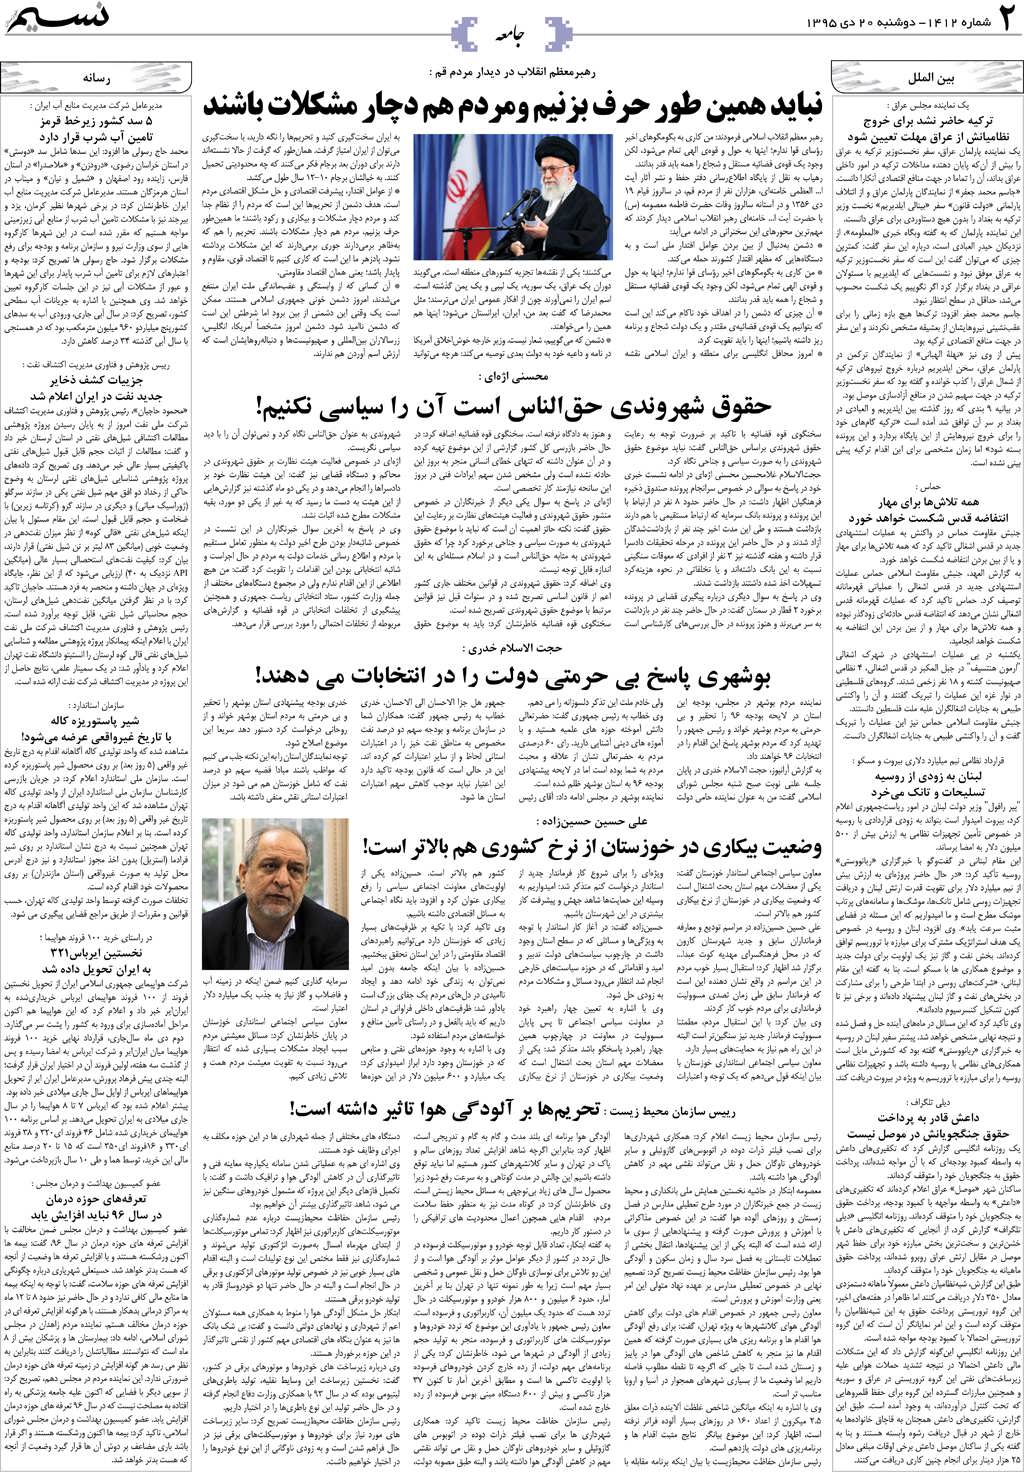 صفحه جامعه روزنامه نسیم شماره 1412